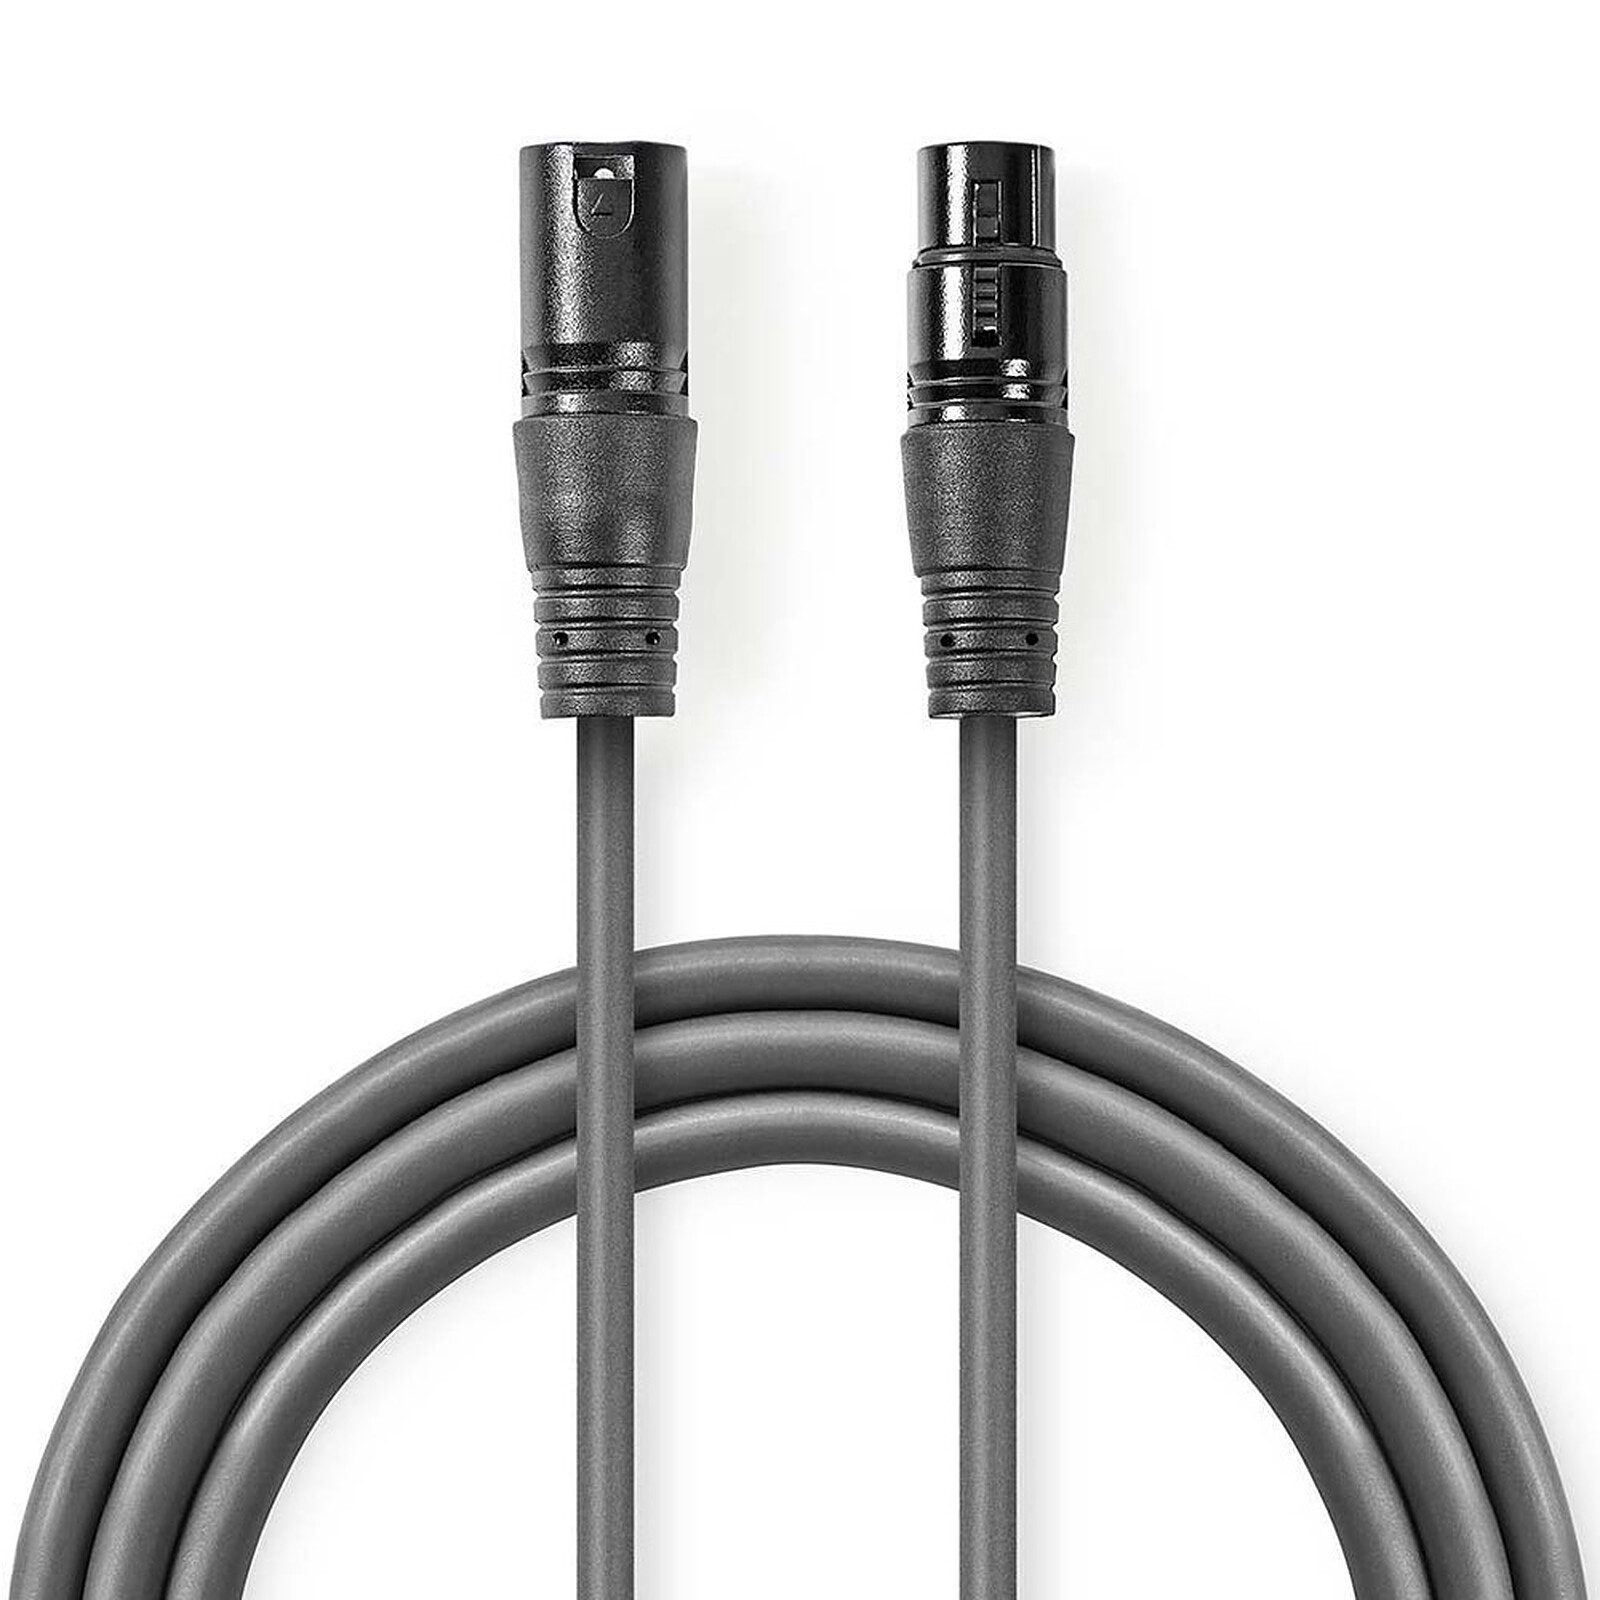 Real Cable OPT-1 5m - Câble audio numérique - Garantie 3 ans LDLC